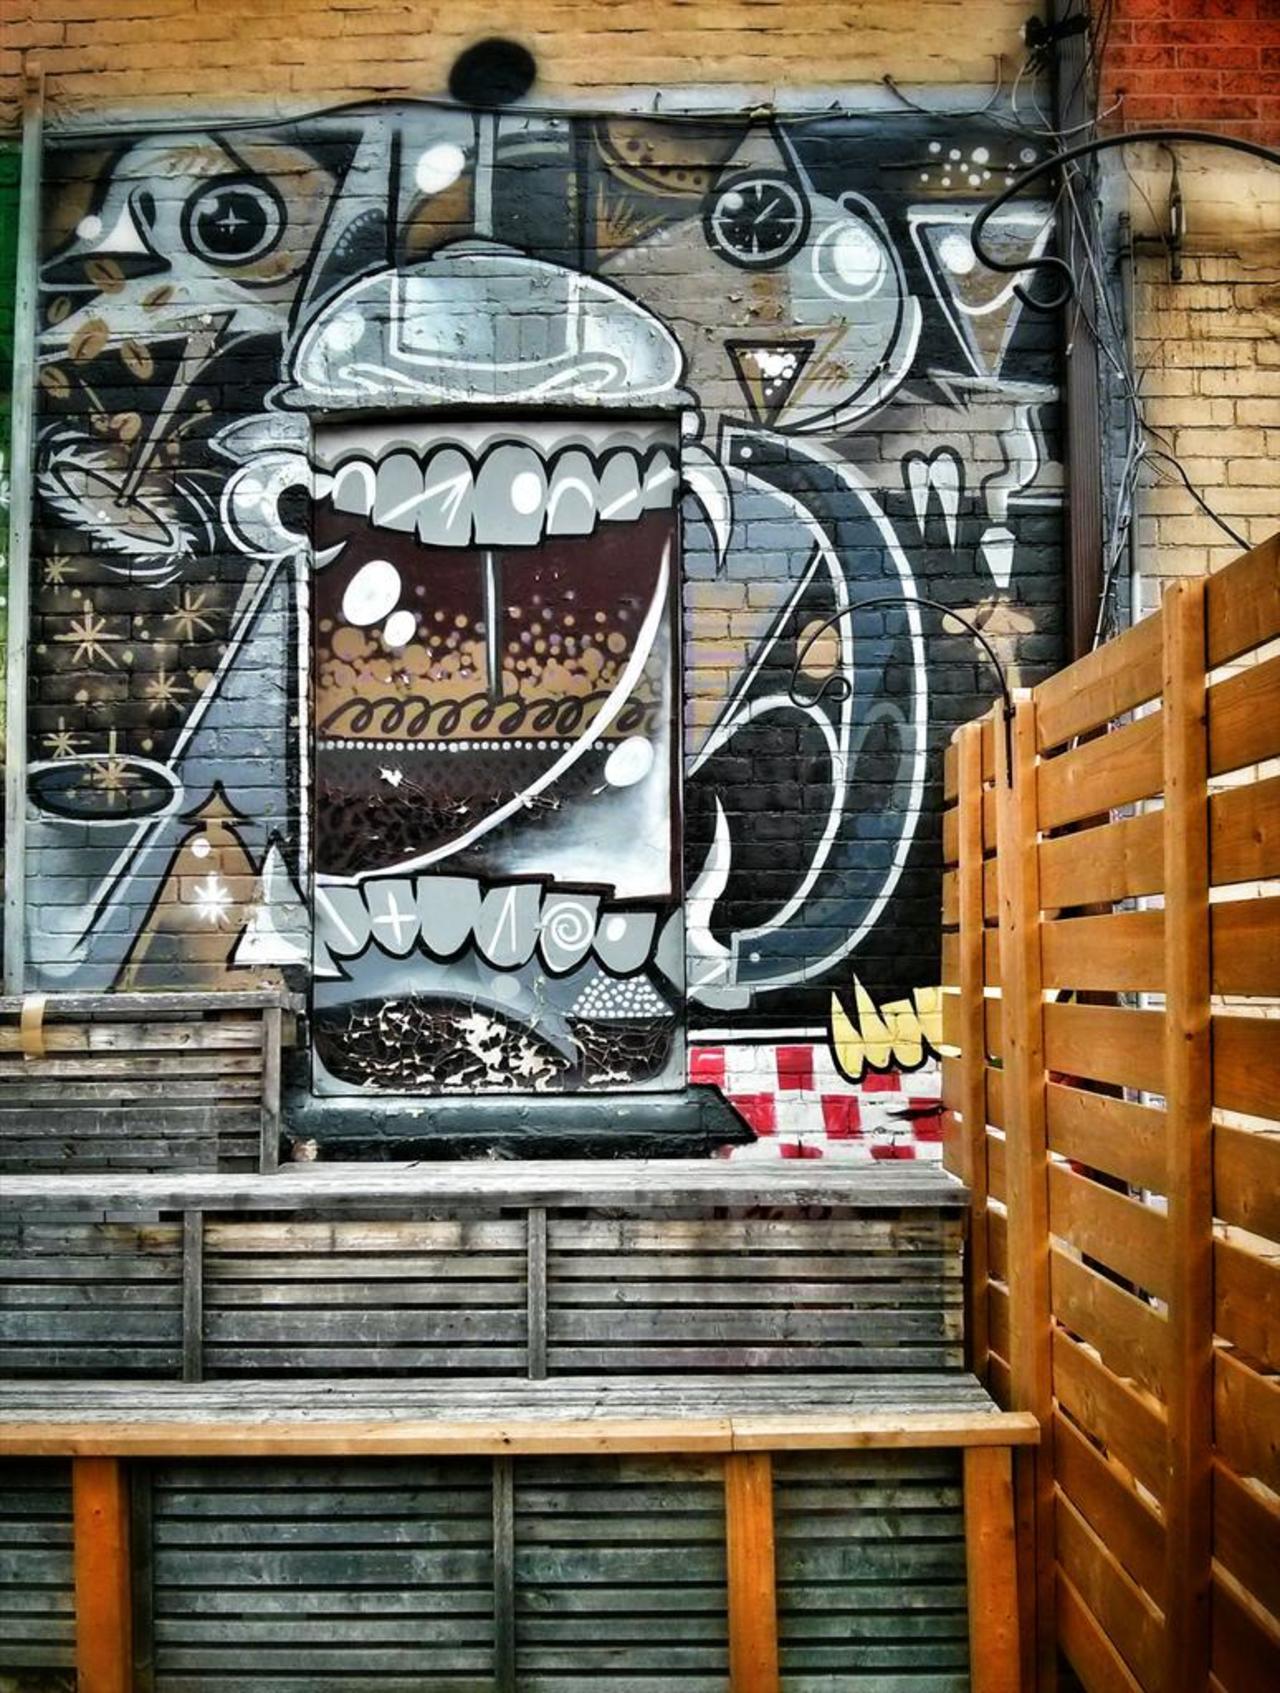 RT @Catjk68: French press monster, Toronto.
#graffiti #streetart #urbanart http://t.co/k1o8vNT1zE